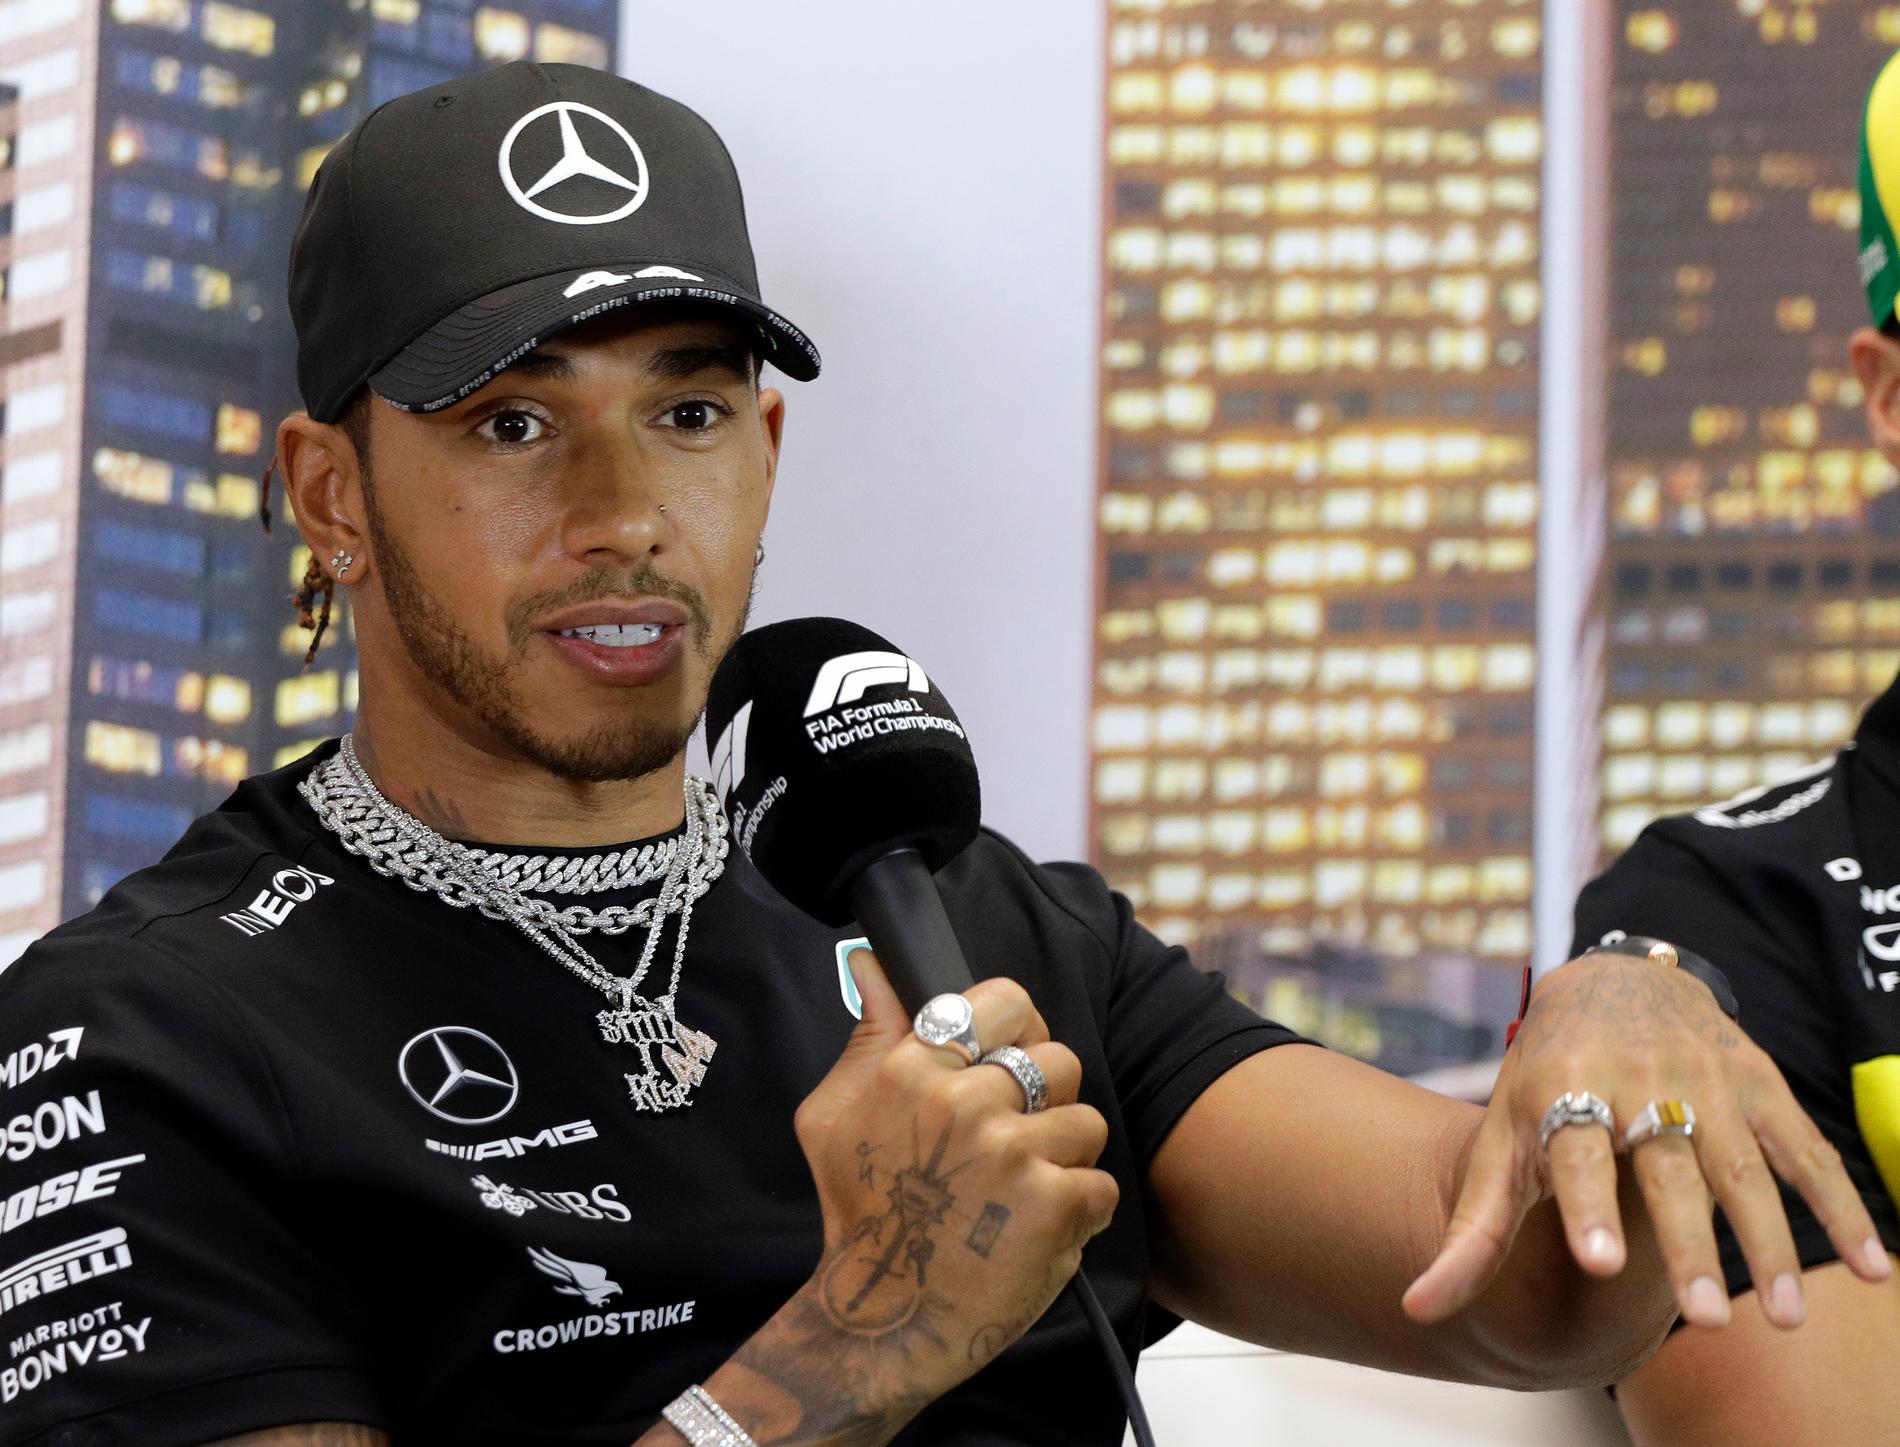 MercedesförarenLewis Hamilton är inte nöjd med att F1-premiären i Melbourne ska köras trots det pågående coronavirusutbrottet. "Cash is king", sade han under en presskonferens på torsdagen.